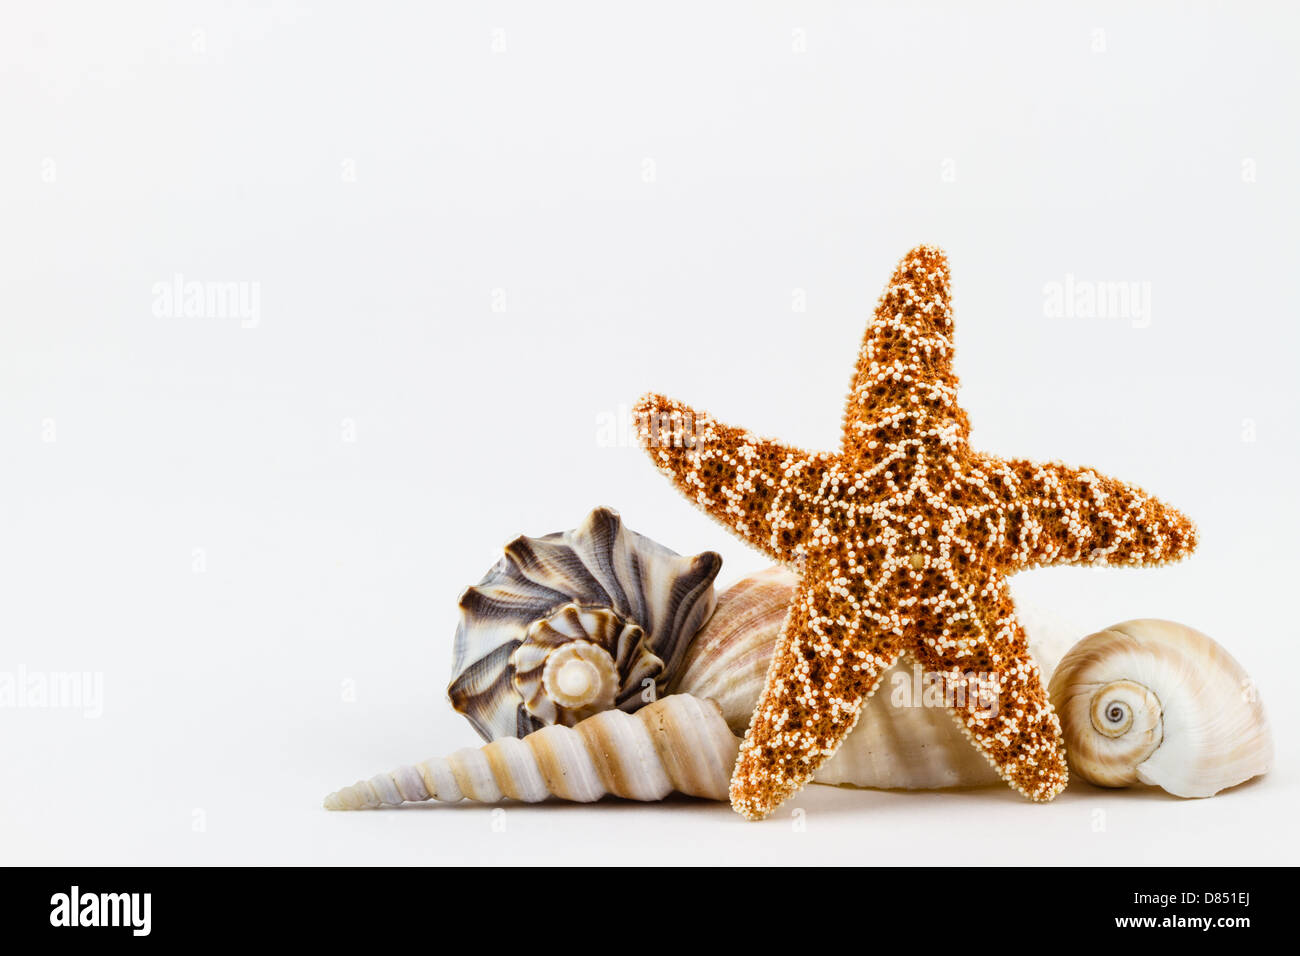 A sugar starfish and various seashells. Stock Photo